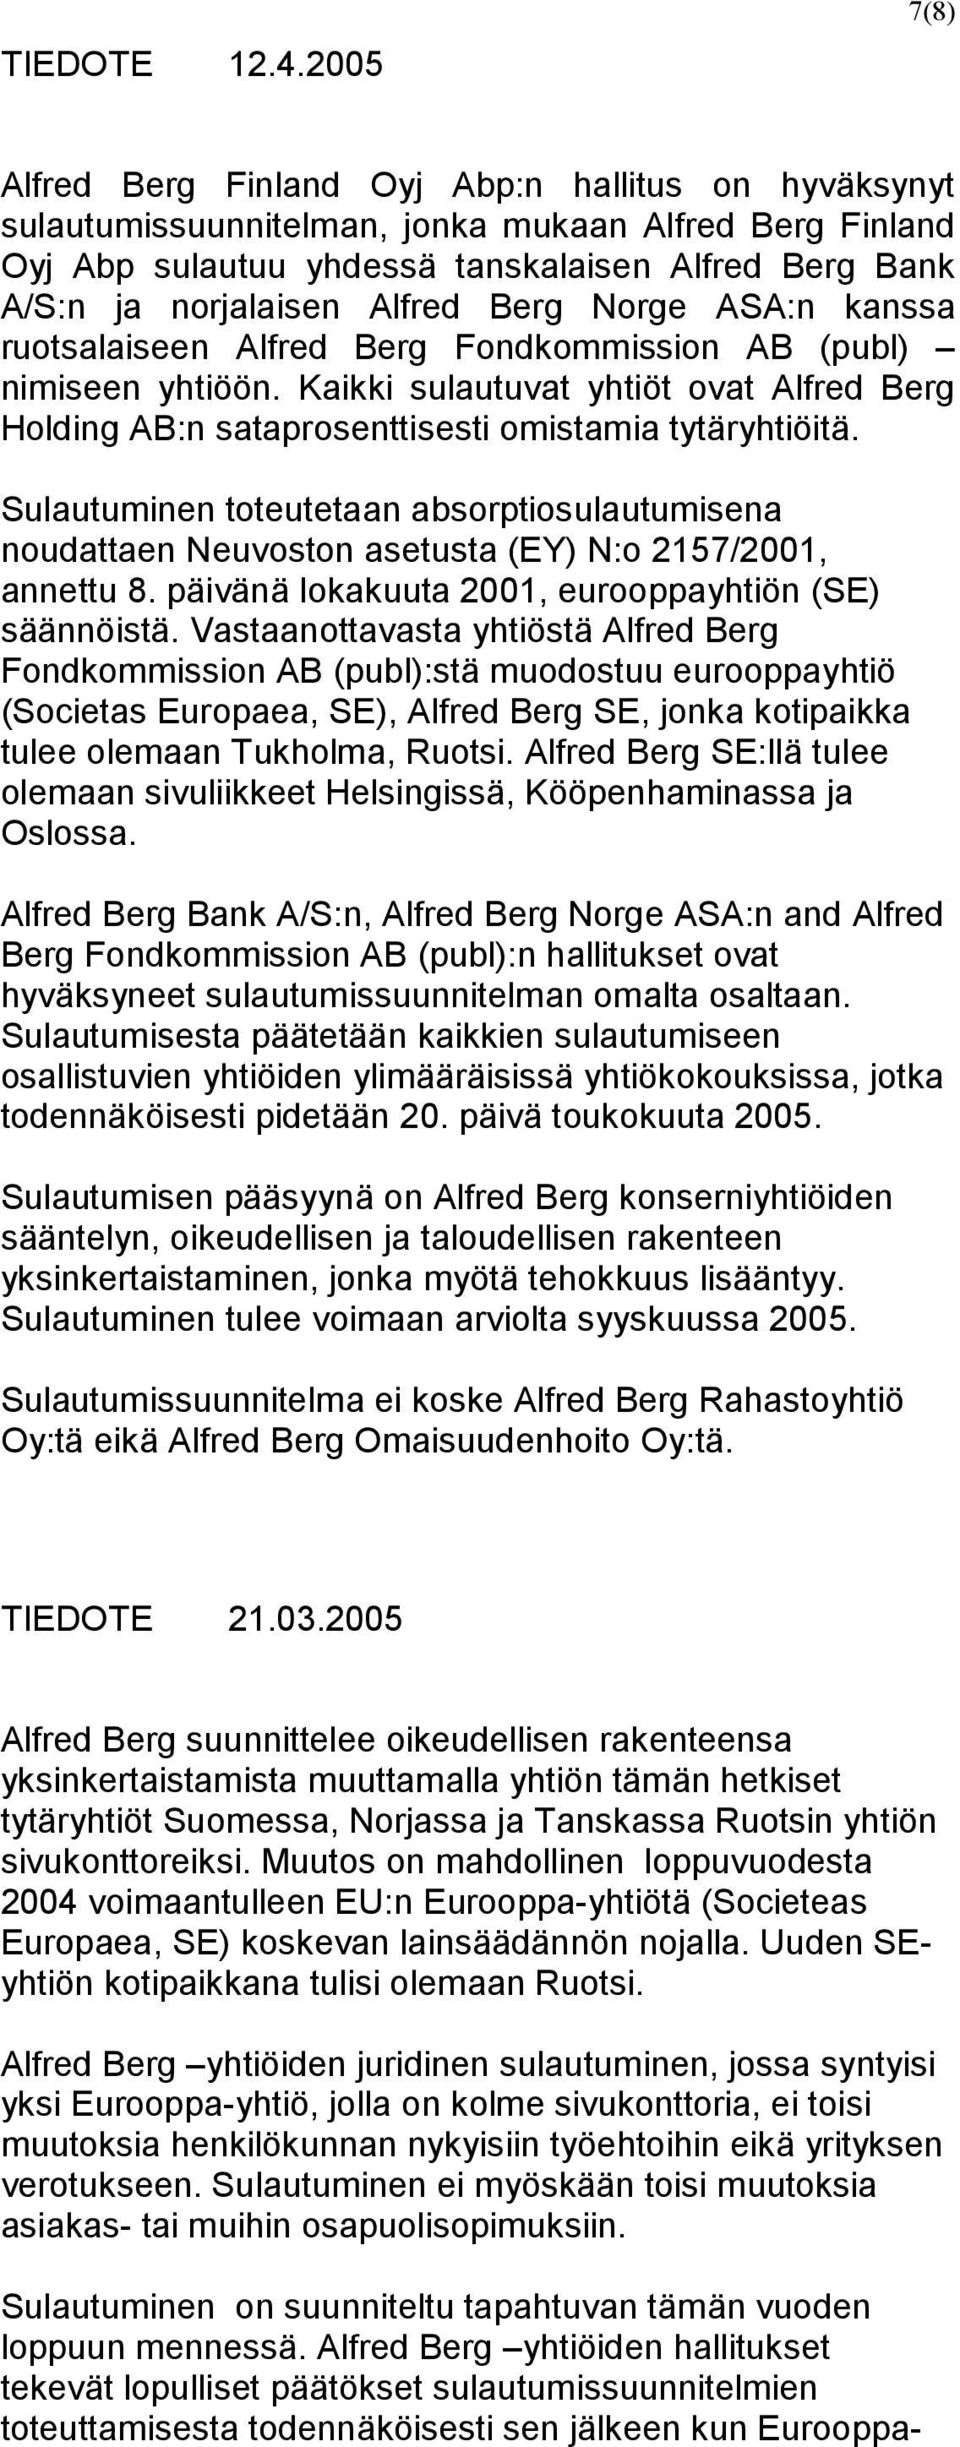 Alfred Berg Norge ASA:n kanssa ruotsalaiseen Alfred Berg Fondkommission AB (publ) nimiseen yhtiöön. Kaikki sulautuvat yhtiöt ovat Alfred Berg Holding AB:n sataprosenttisesti omistamia tytäryhtiöitä.